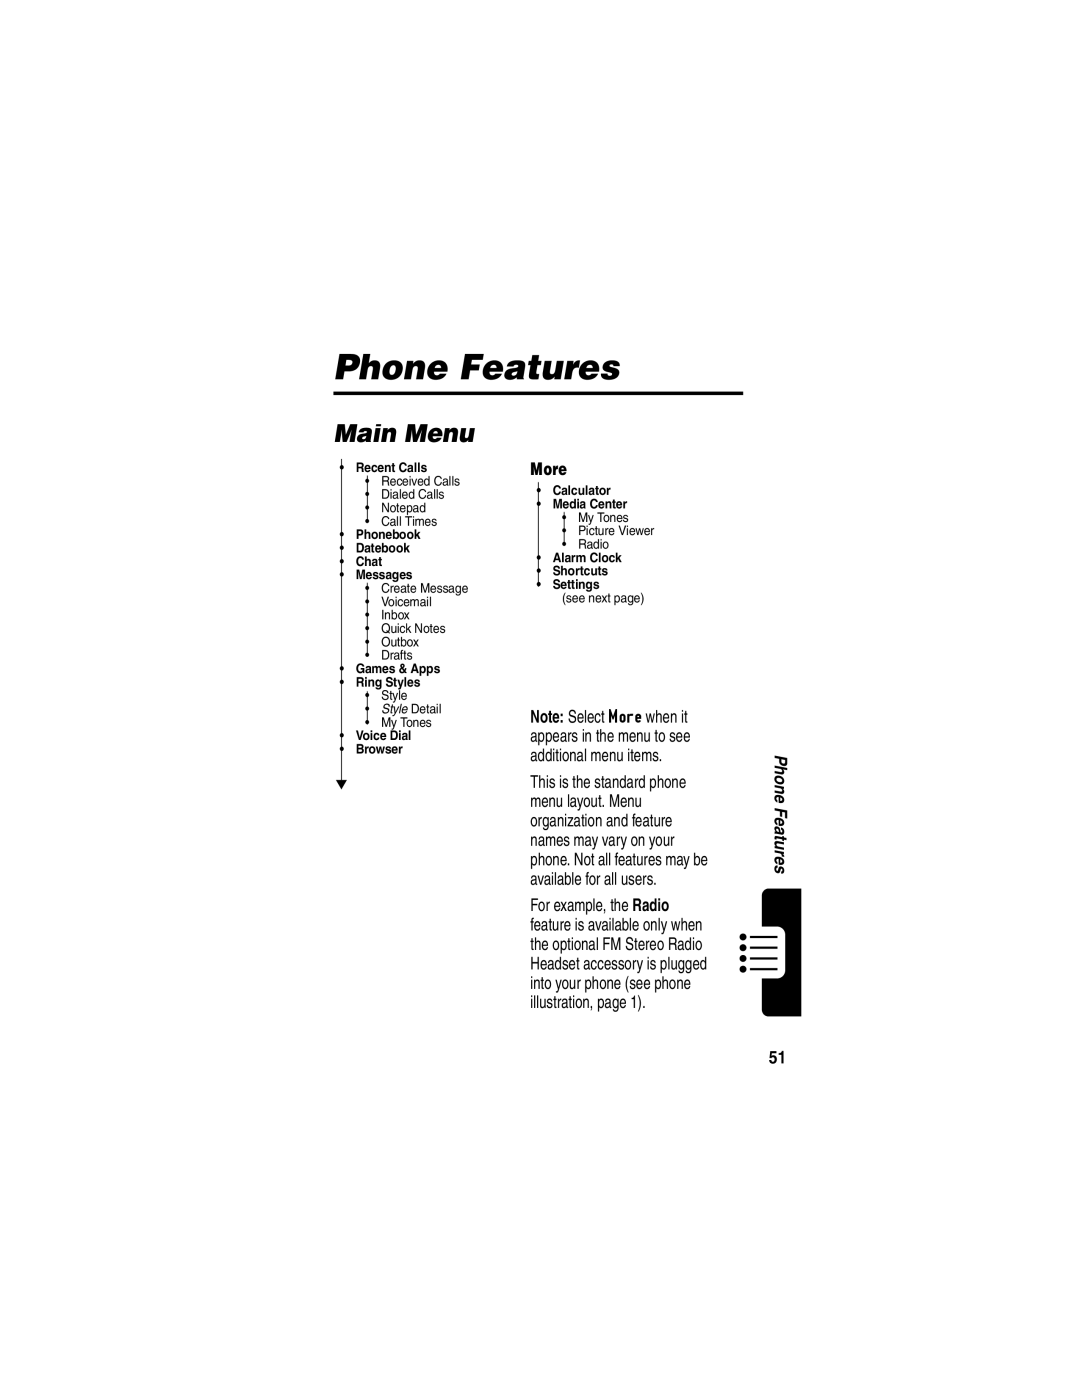 Motorola C353 manual Phone Features, Main Menu, More 